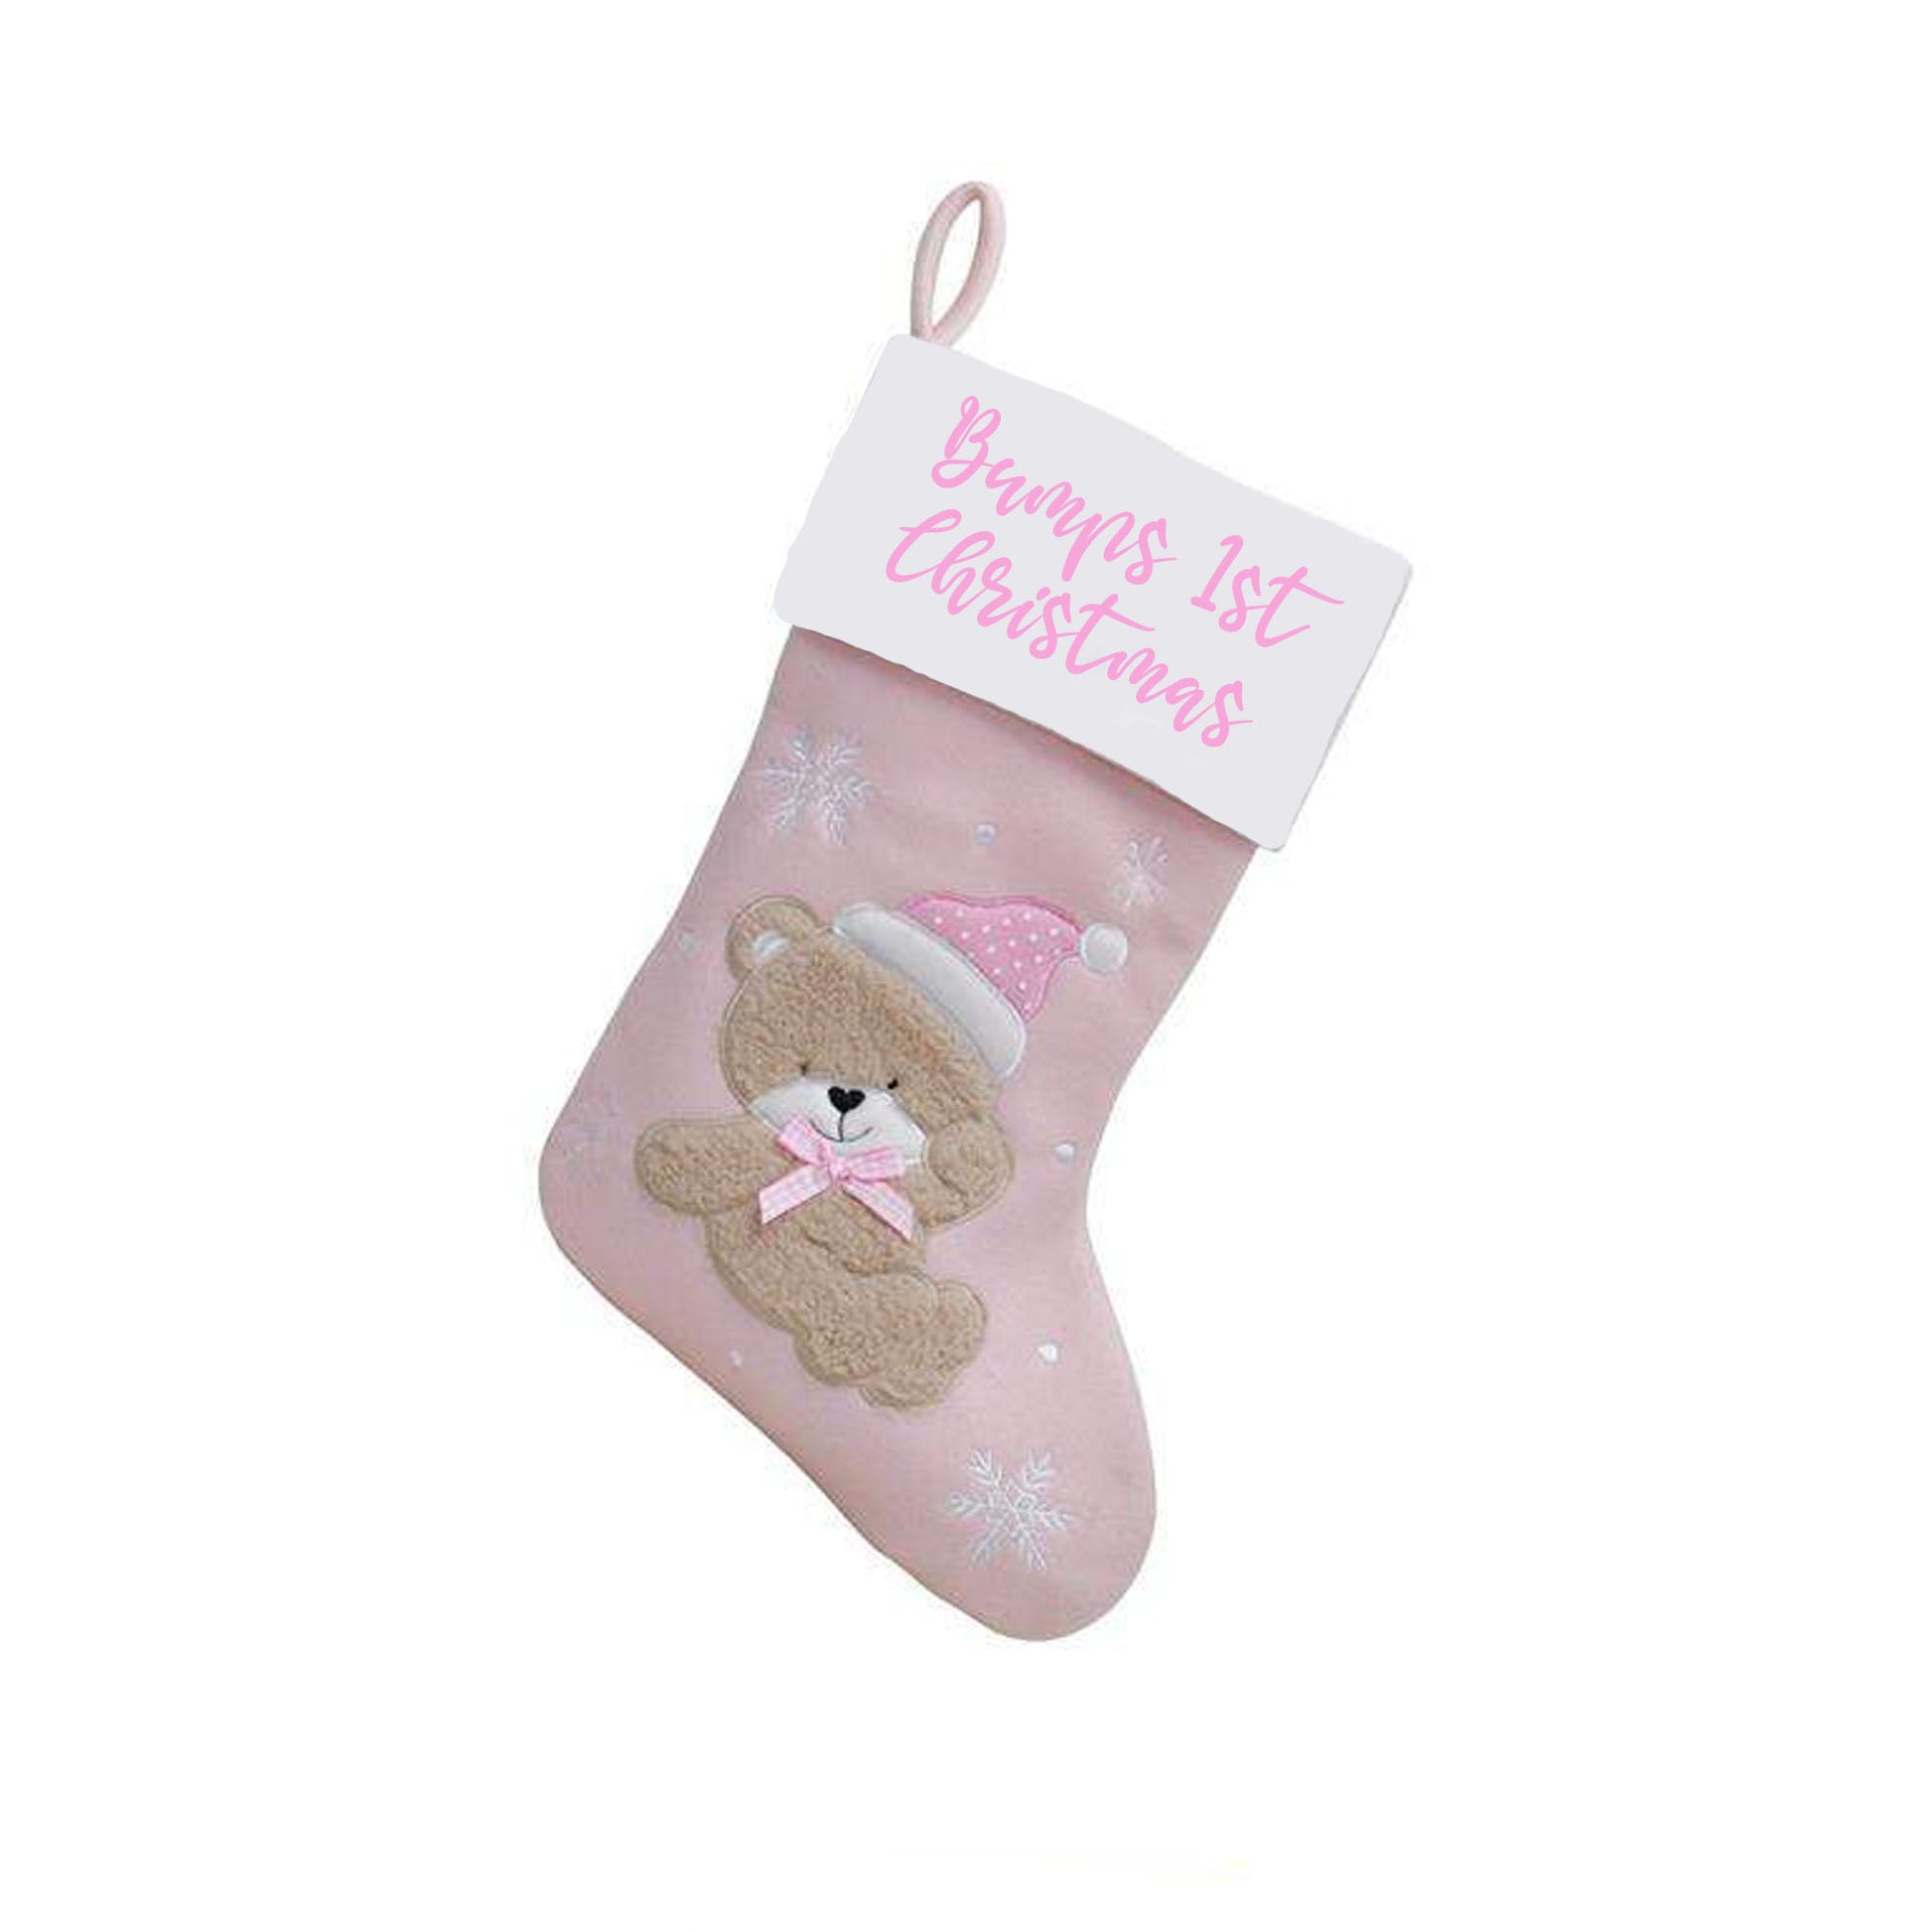 Personalised Baby's 1st Christmas Bear Stocking Sentimental Keepsake  - Always Looking Good - Baby Pink  